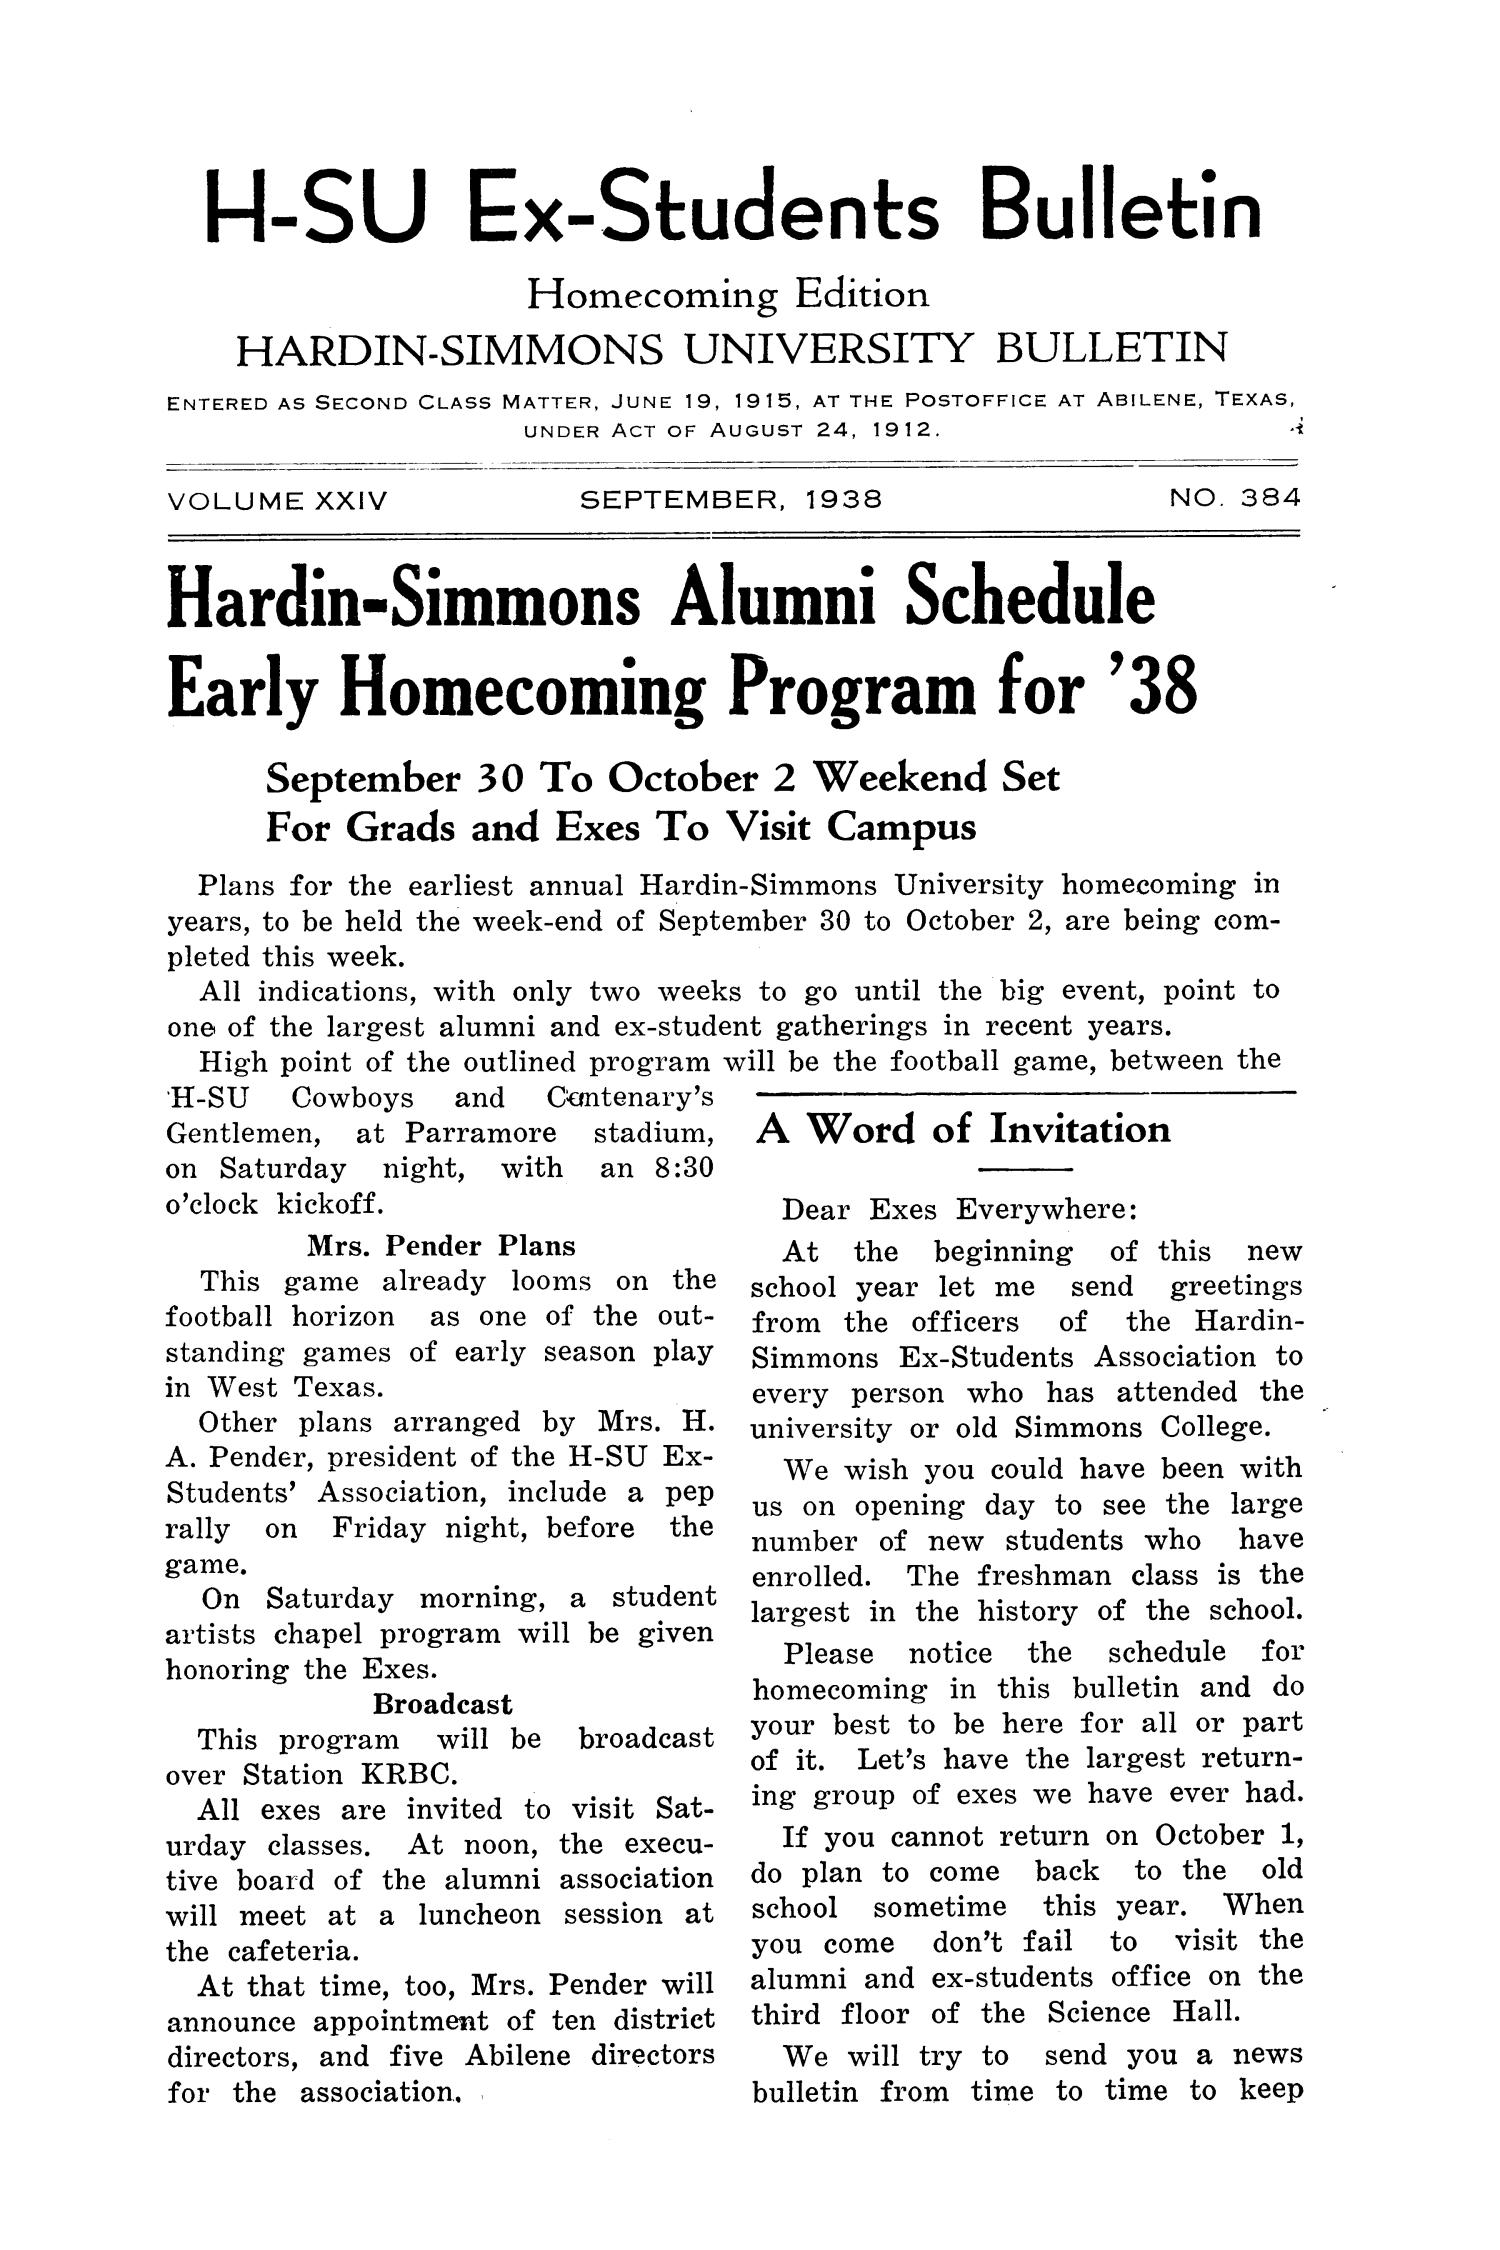 Hardin-Simmons Ex-Students Bulletin, September 1938
                                                
                                                    1
                                                